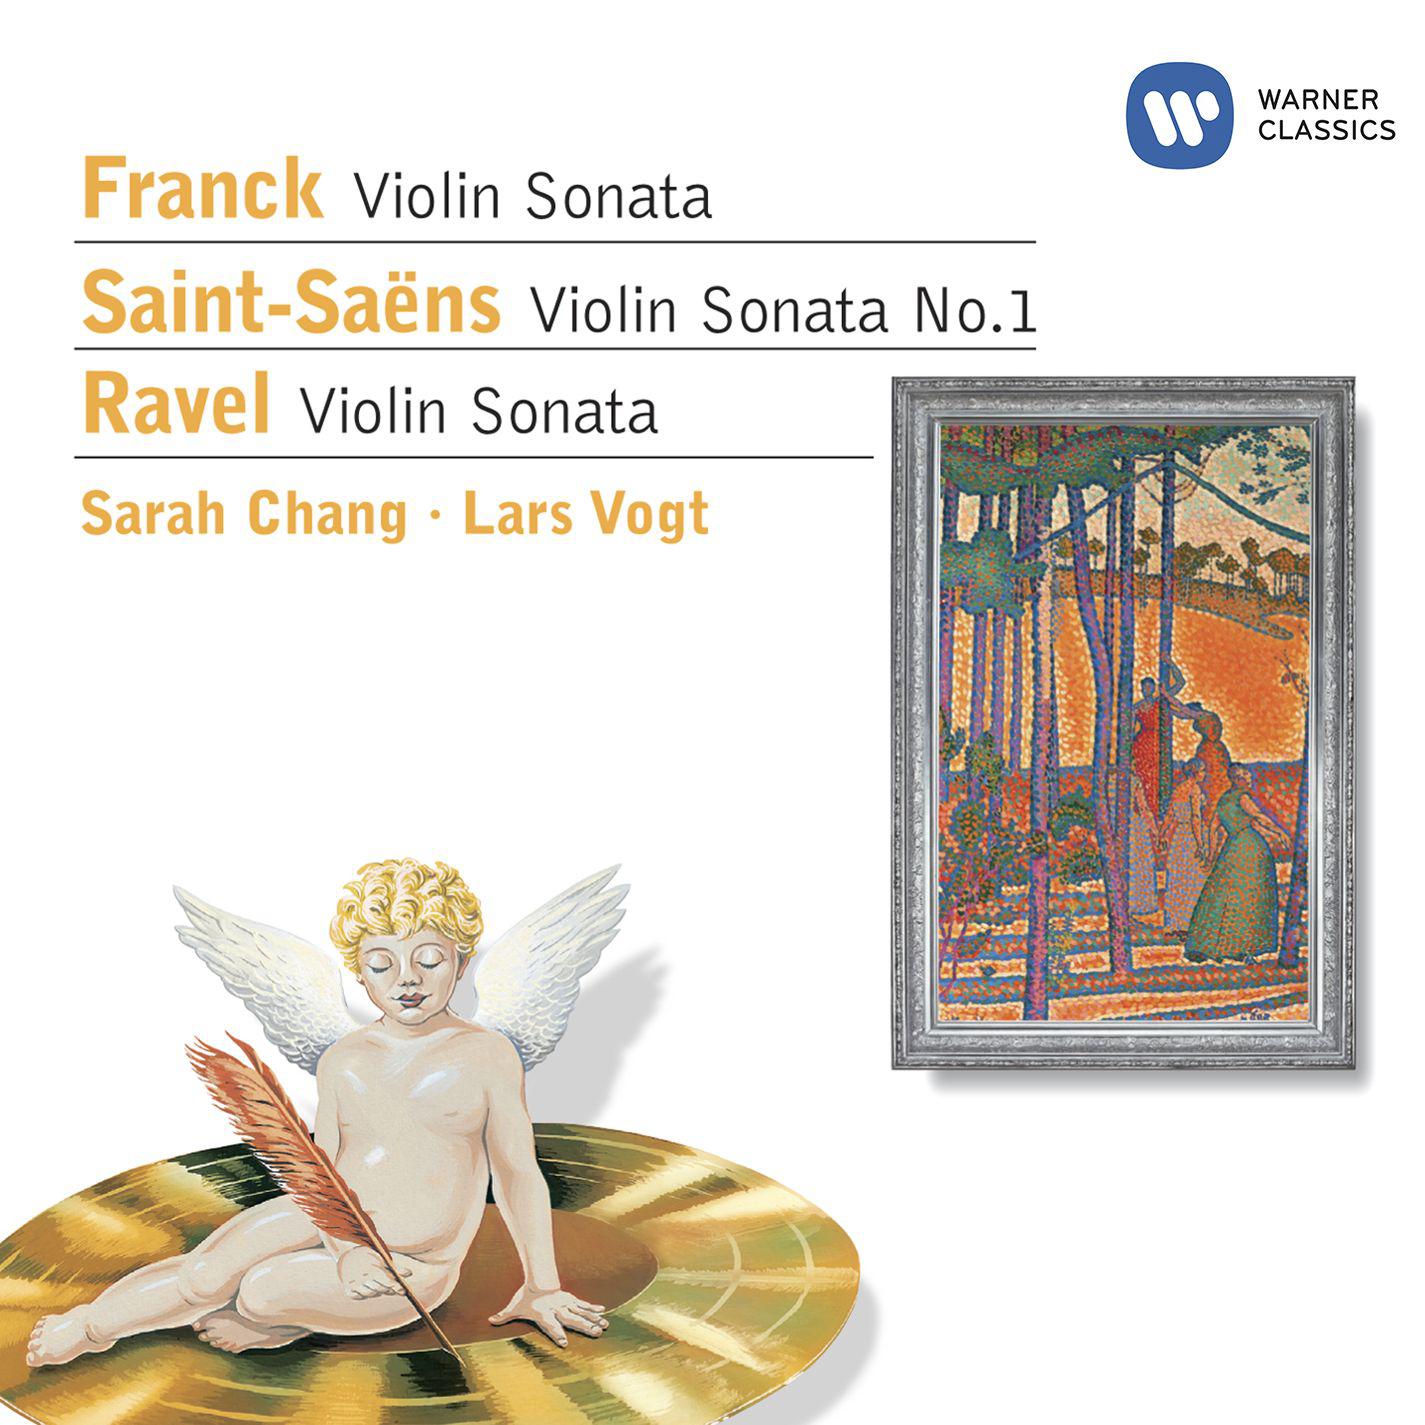 Franck: Violin Sonata  SaintSa ns: Violin Sonata No. 1  Ravel: Violin Sonata